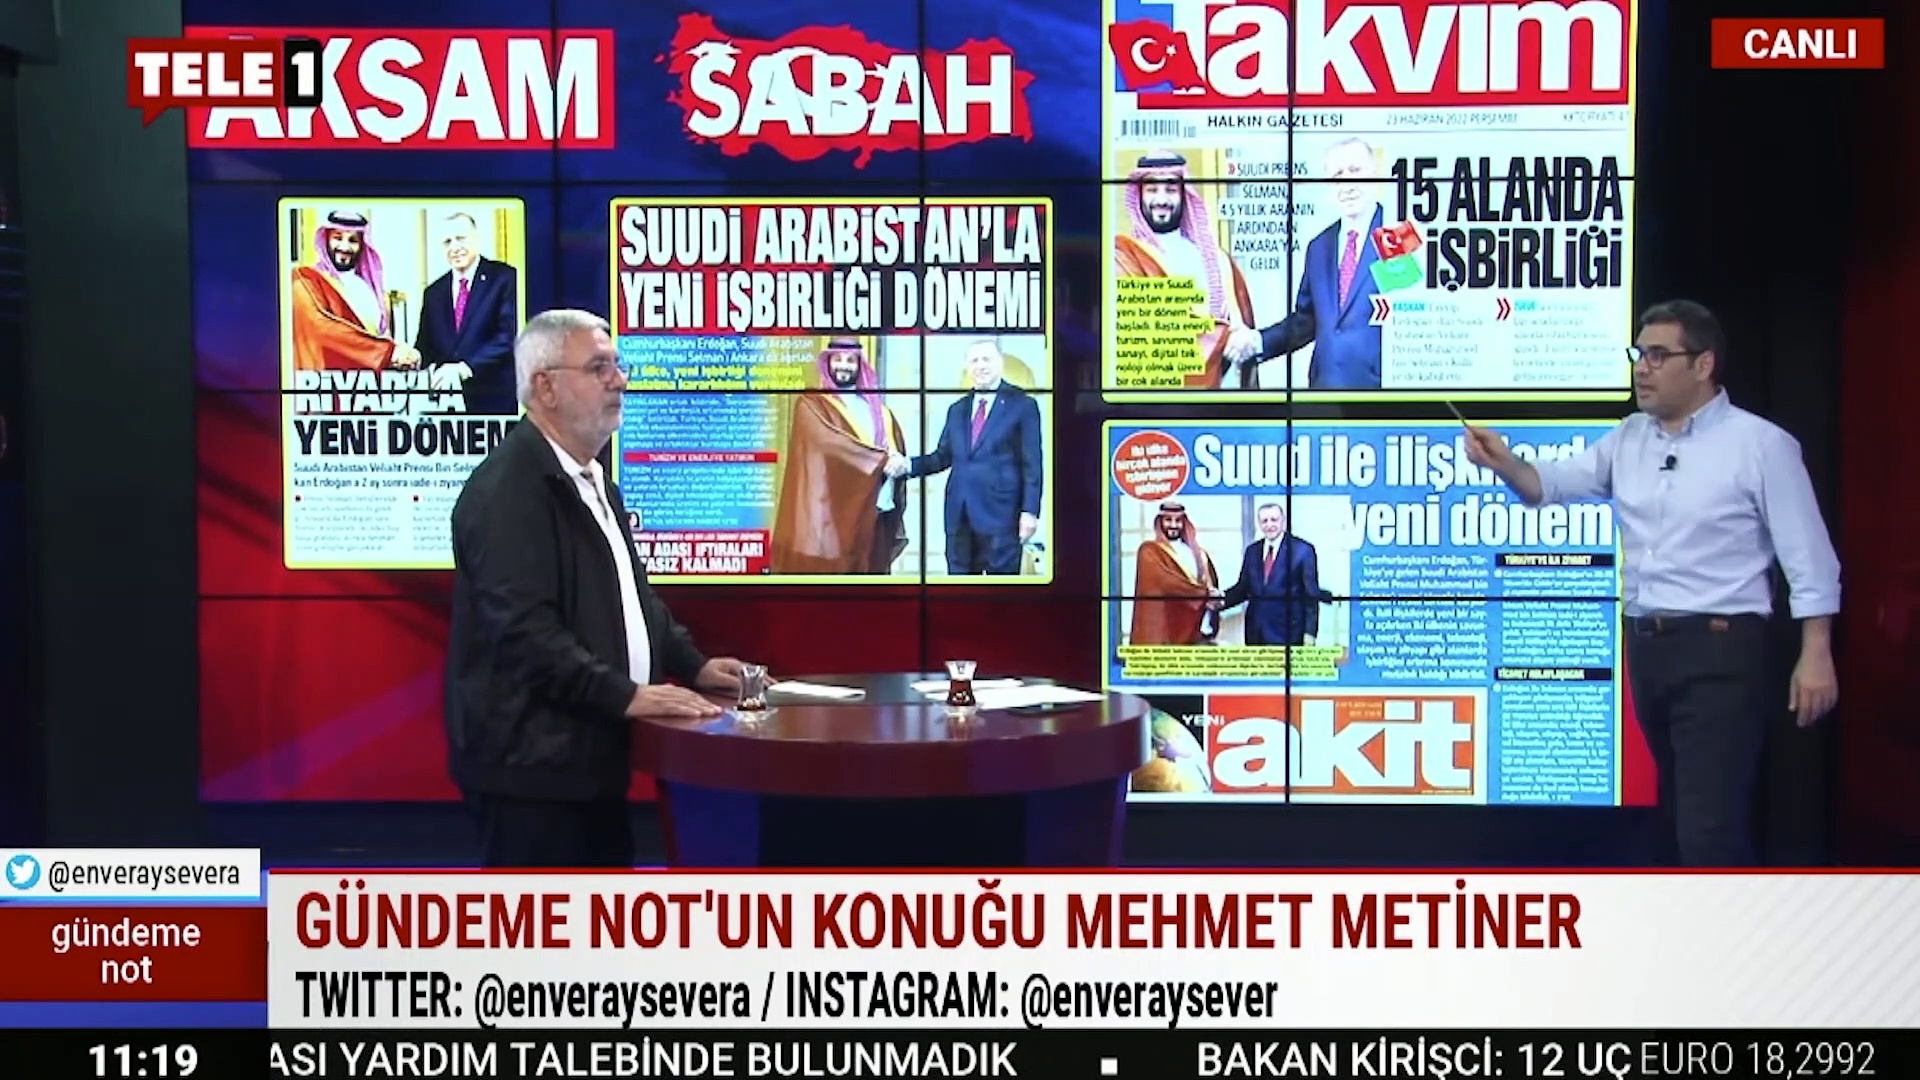 AKP'li Metiner'den “Yandaş nasıl olmalı?” sorusuna yanıt: Benim gibi olmalı